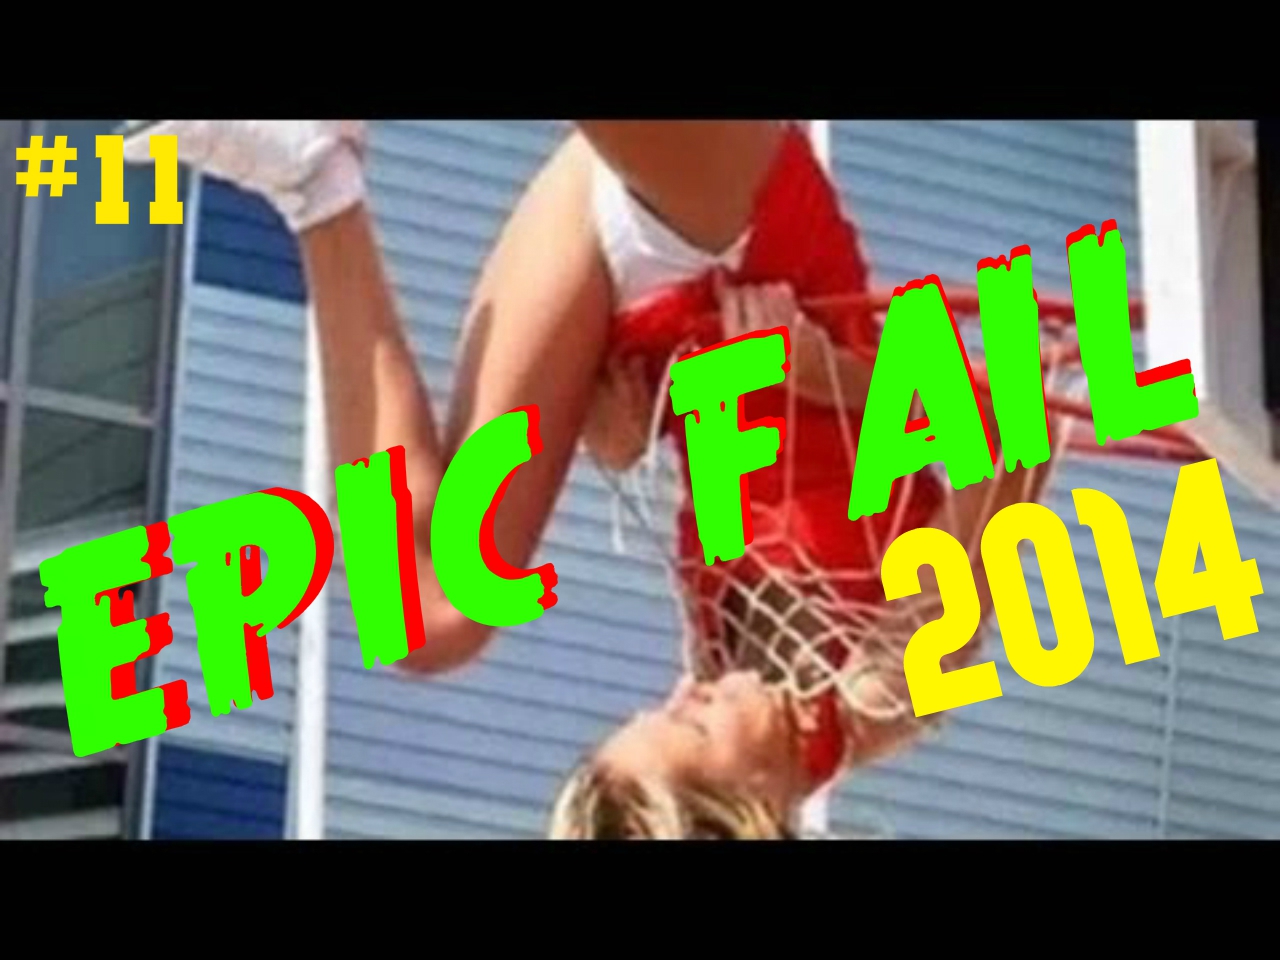 BEST EPIC FAIL /Win Compilation/ FAILS August 2014 #12